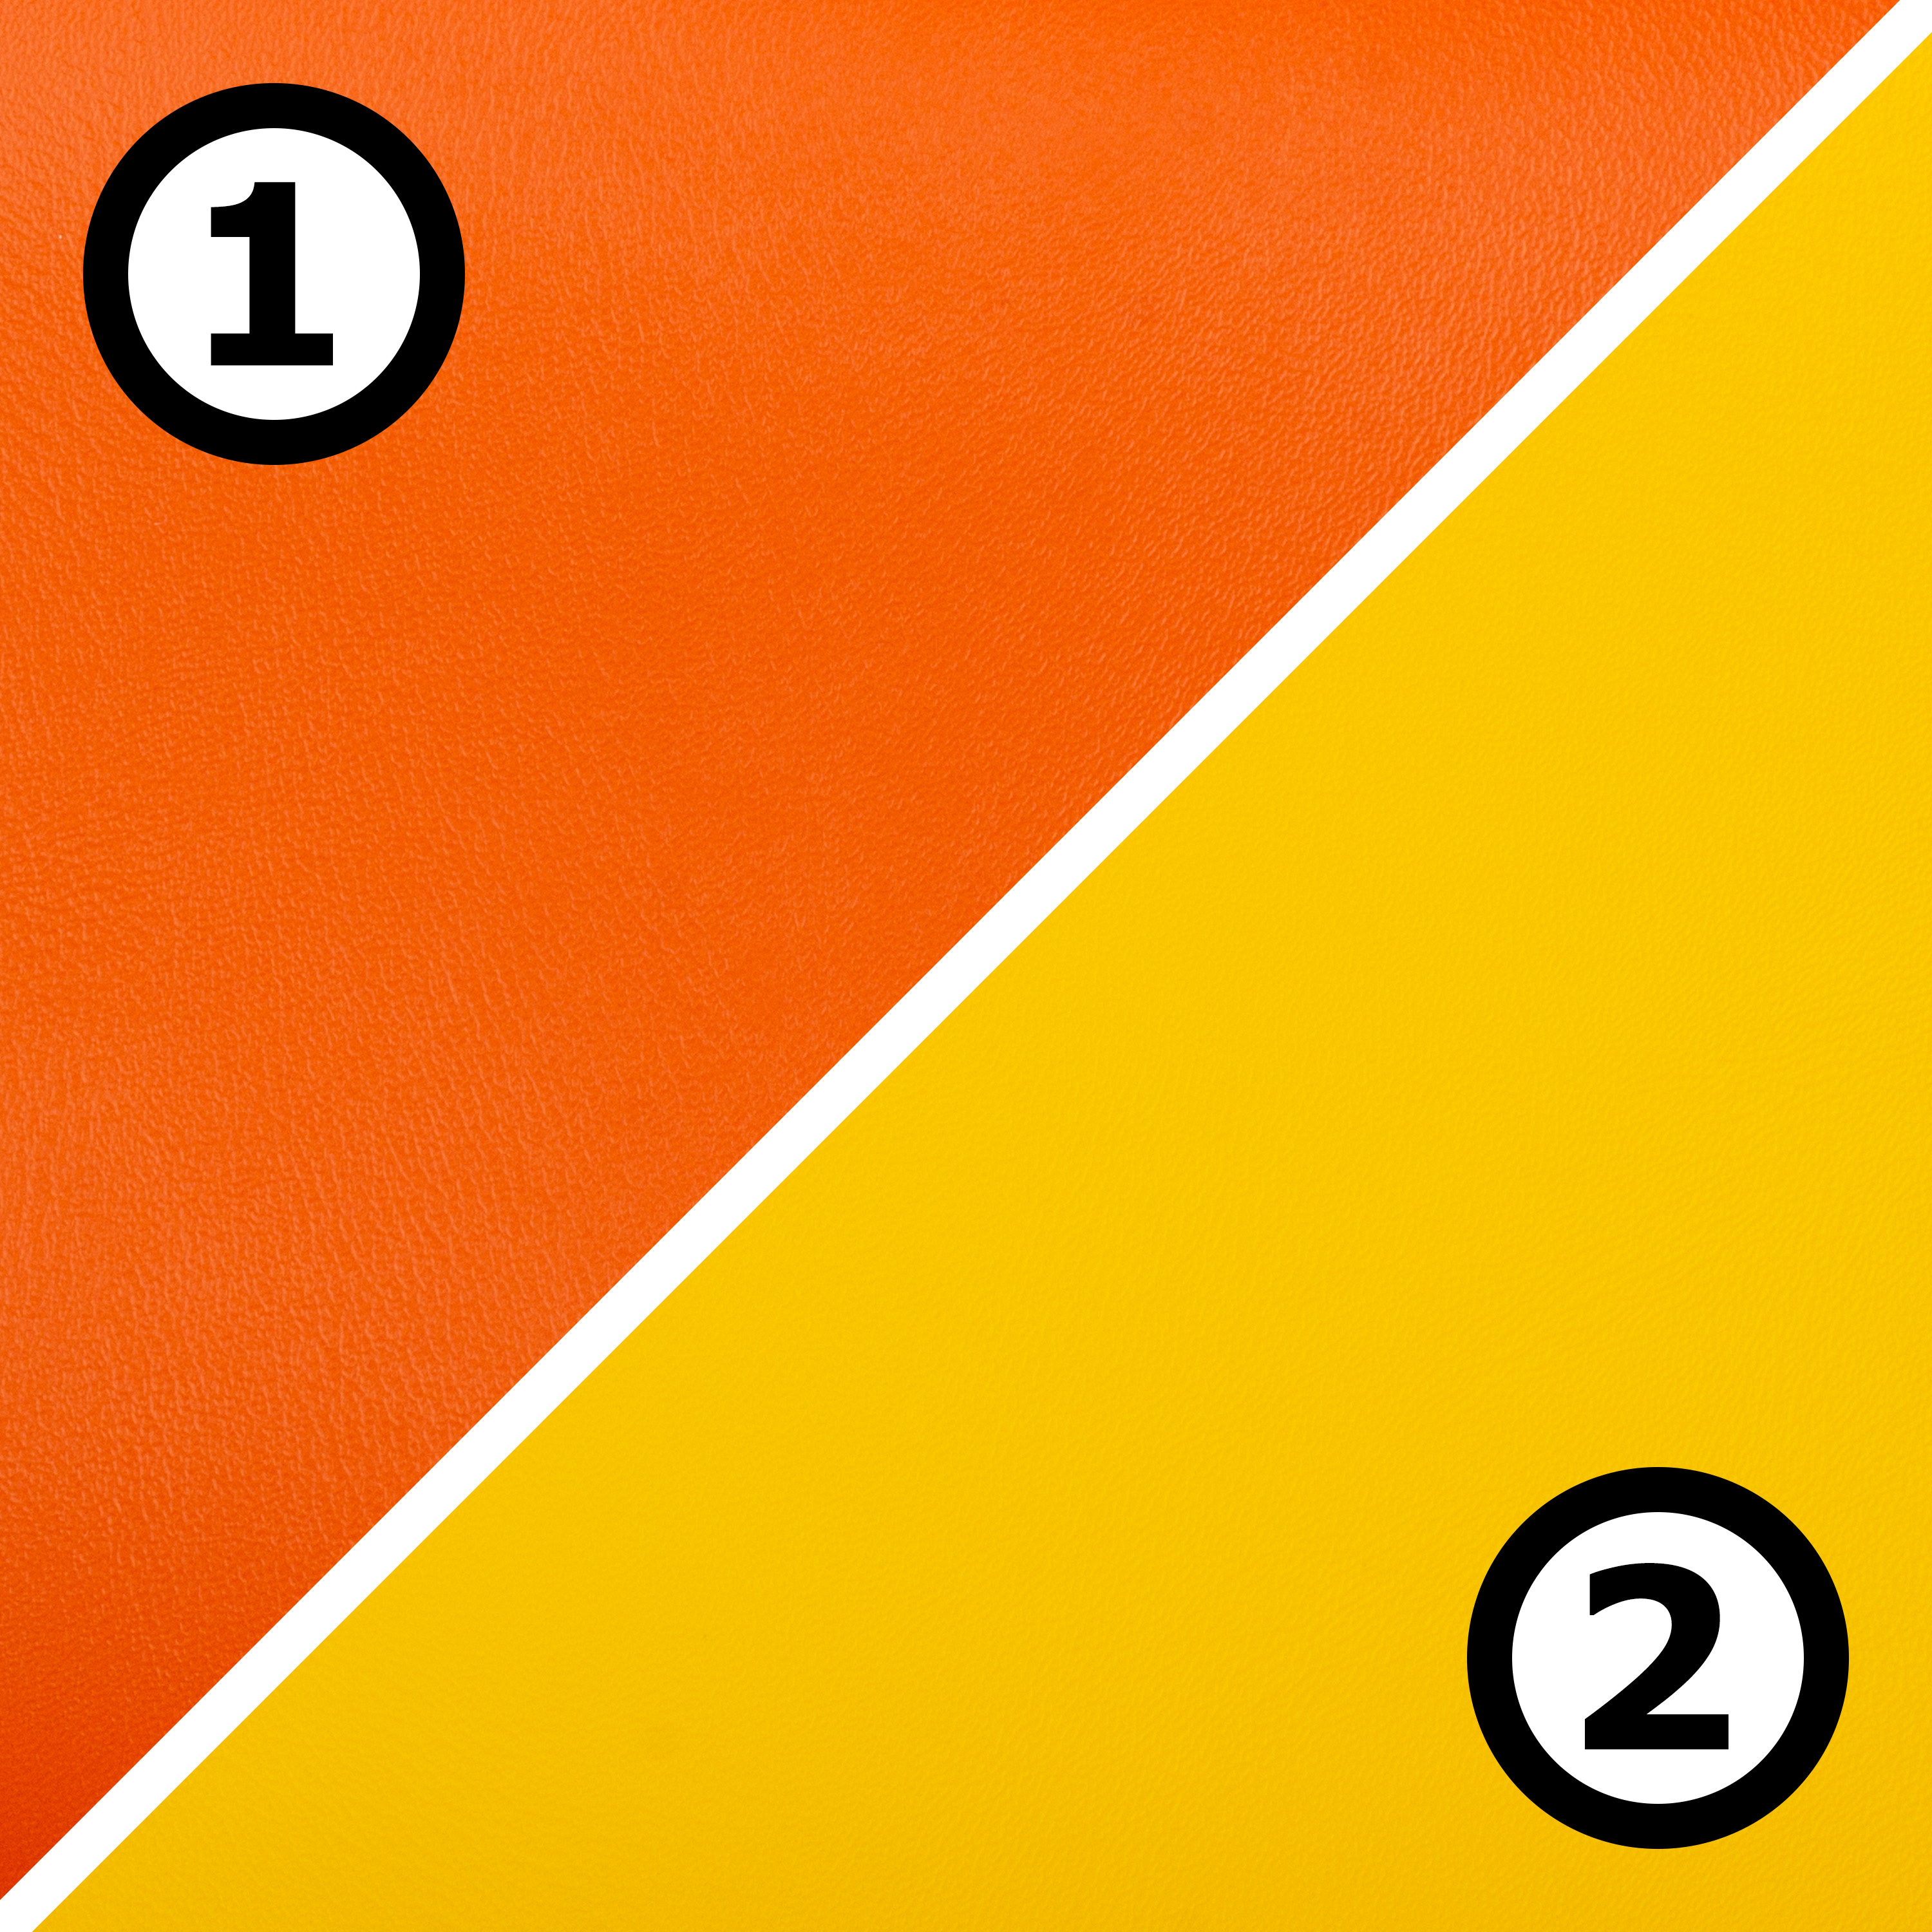 Liegepolster 'Premium' 132,5 x 54 x 8 cm, orange/gelb